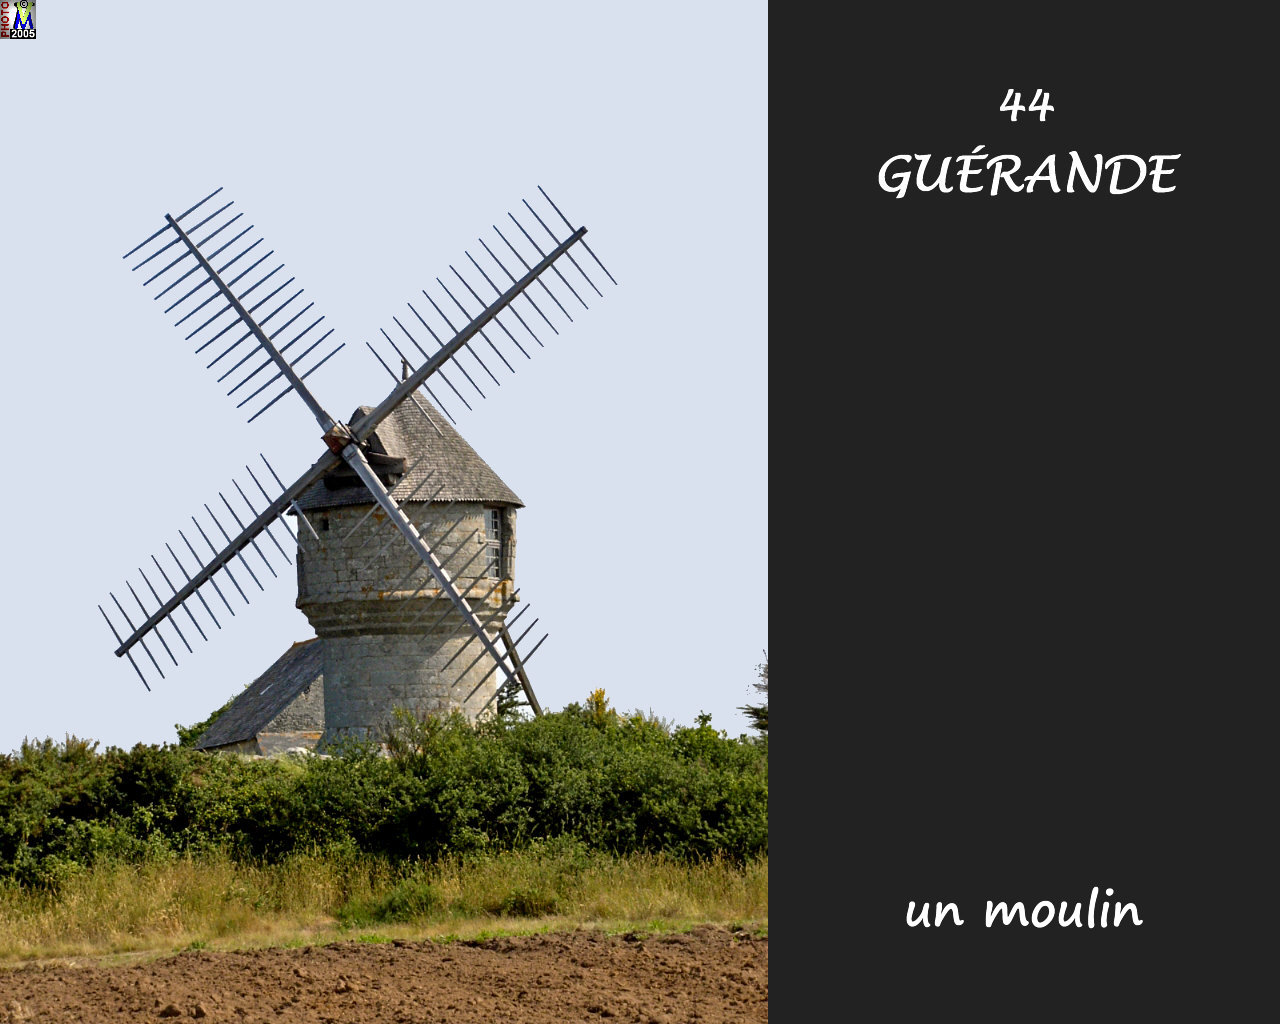 44GUERANDE_moulin_100.jpg